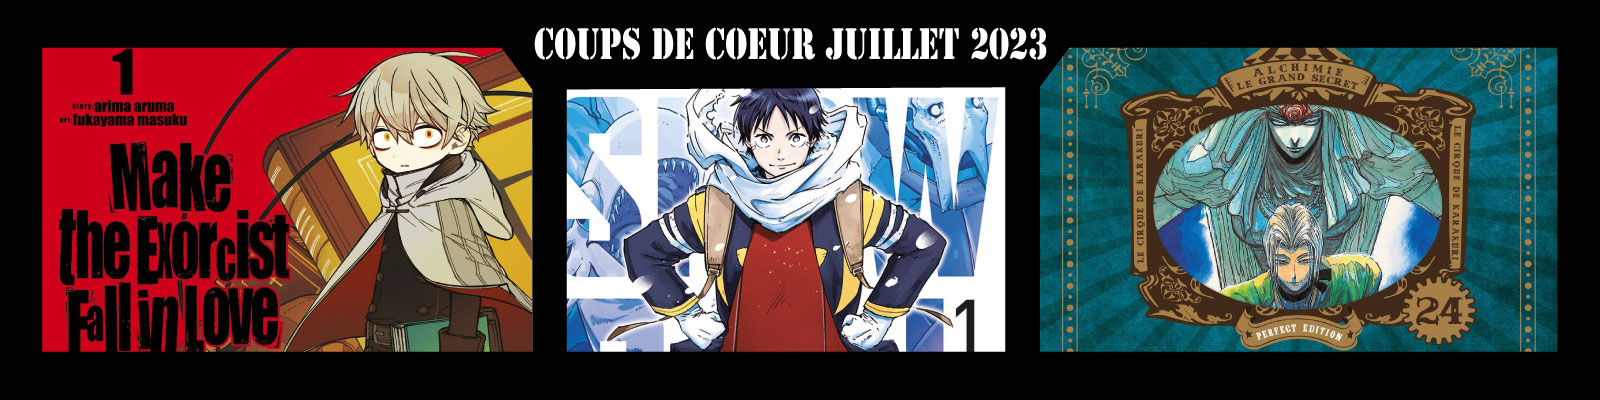 Coups-de-coeur-juillet 2023